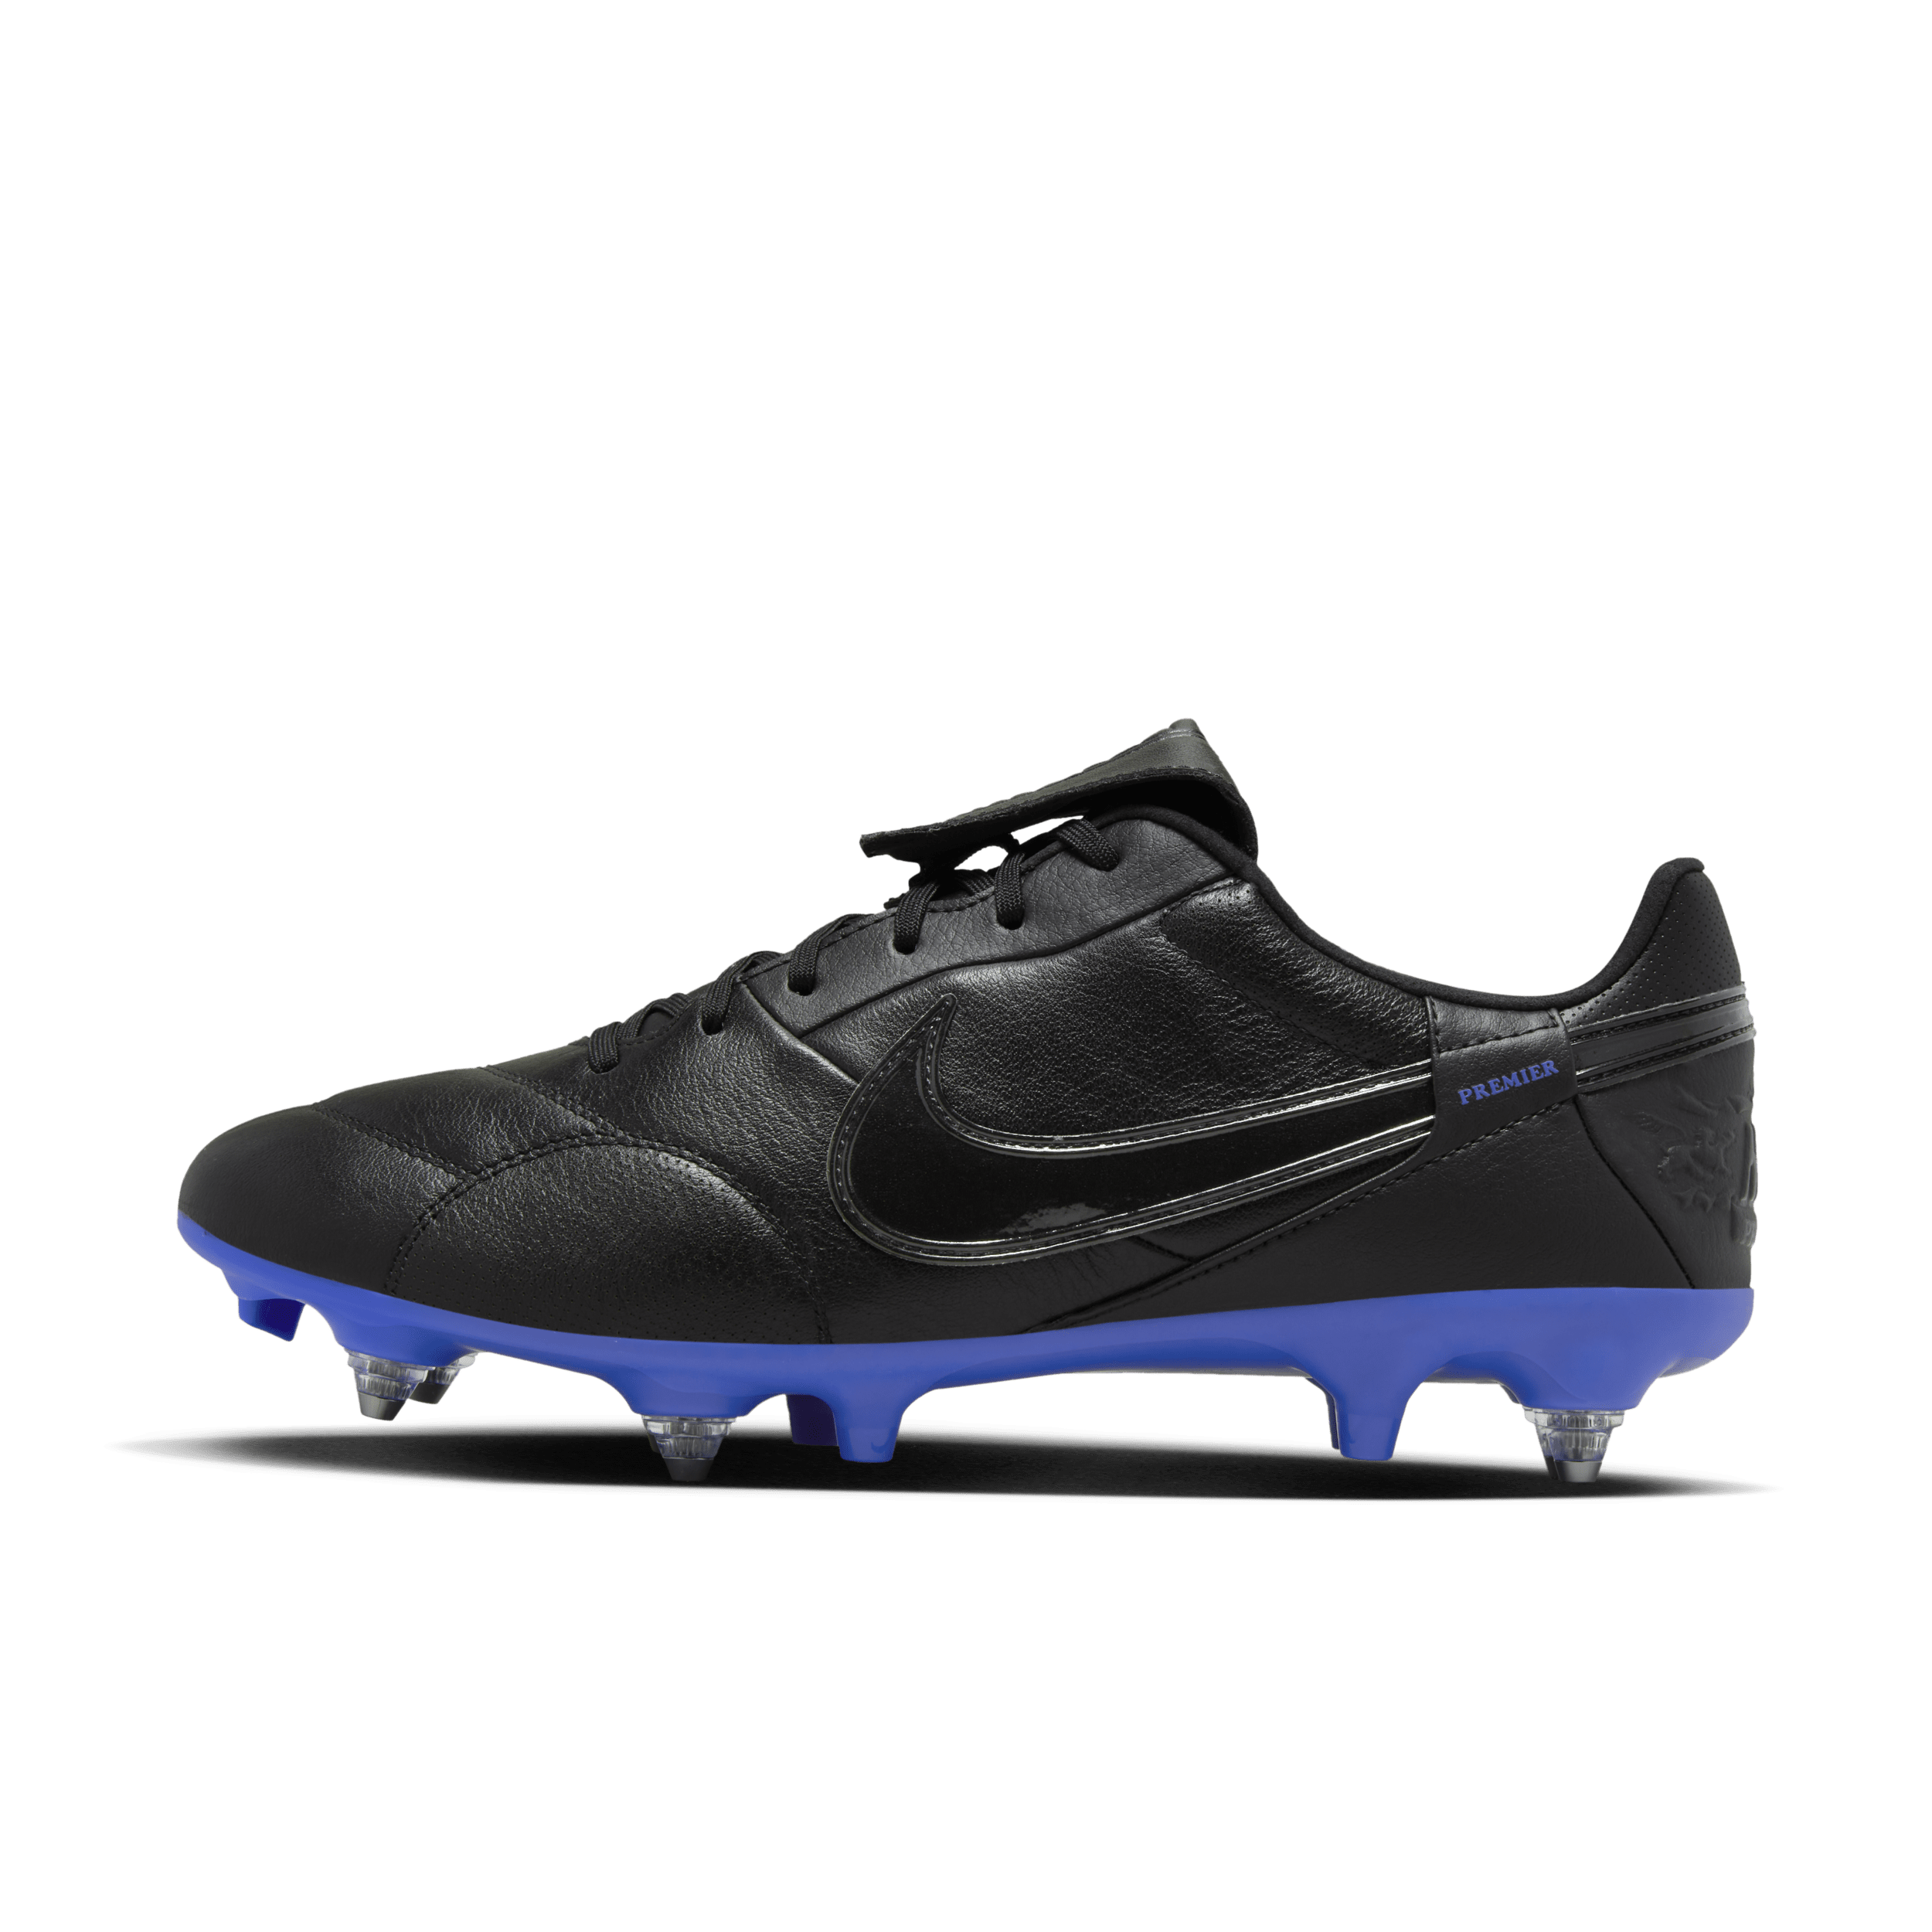 NikePremier 3-fodboldstøvler (low-top) til blødt underlag - sort